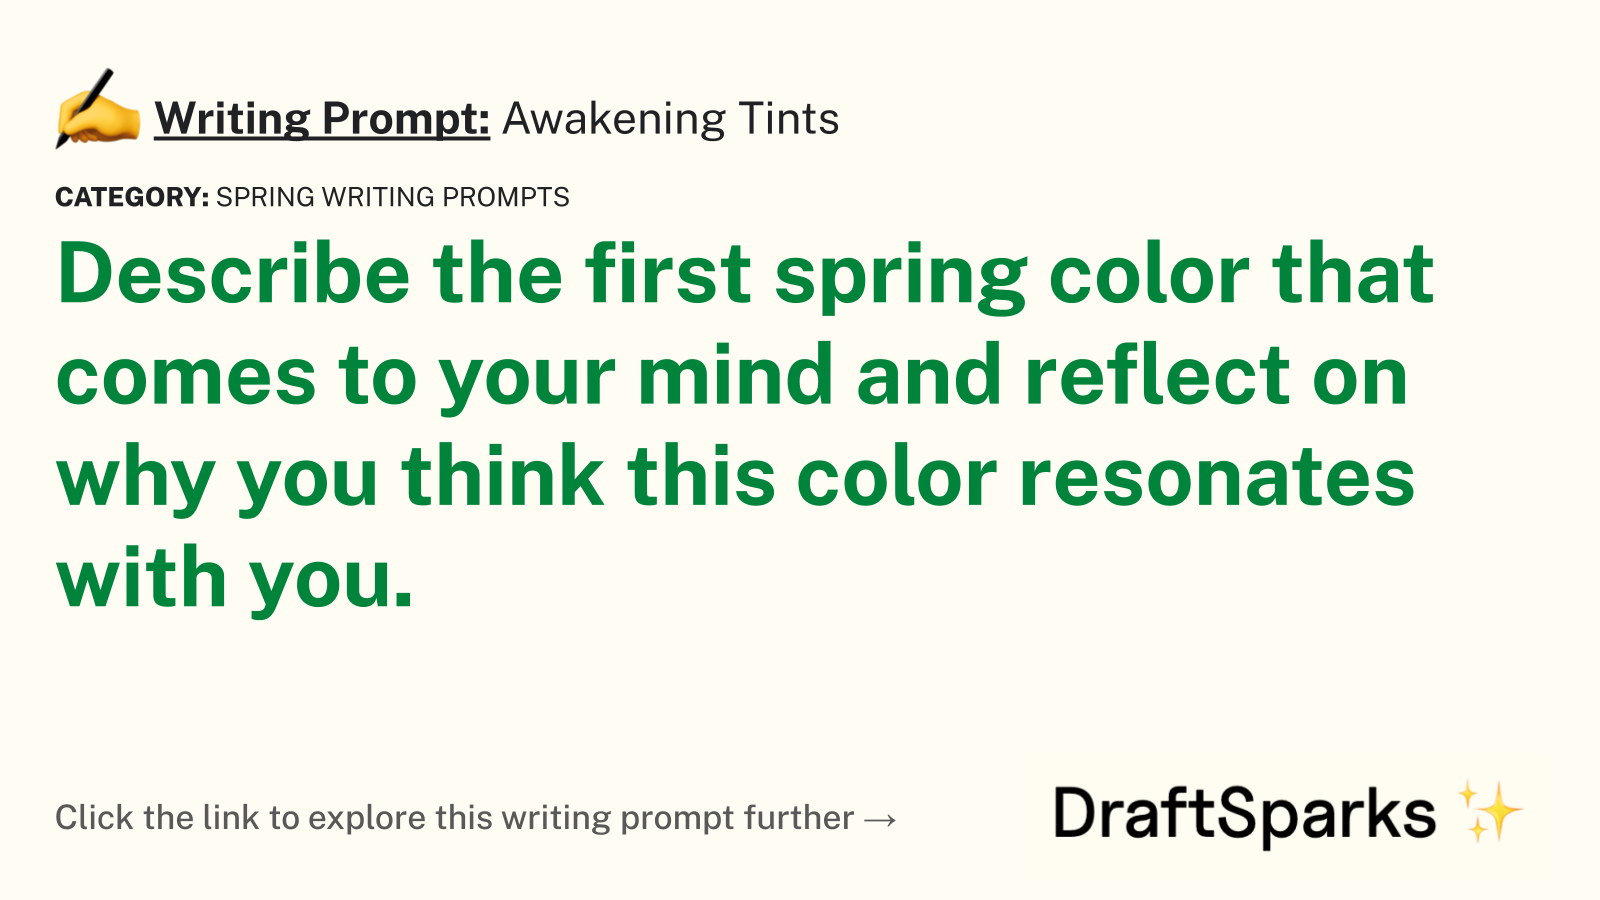 Awakening Tints